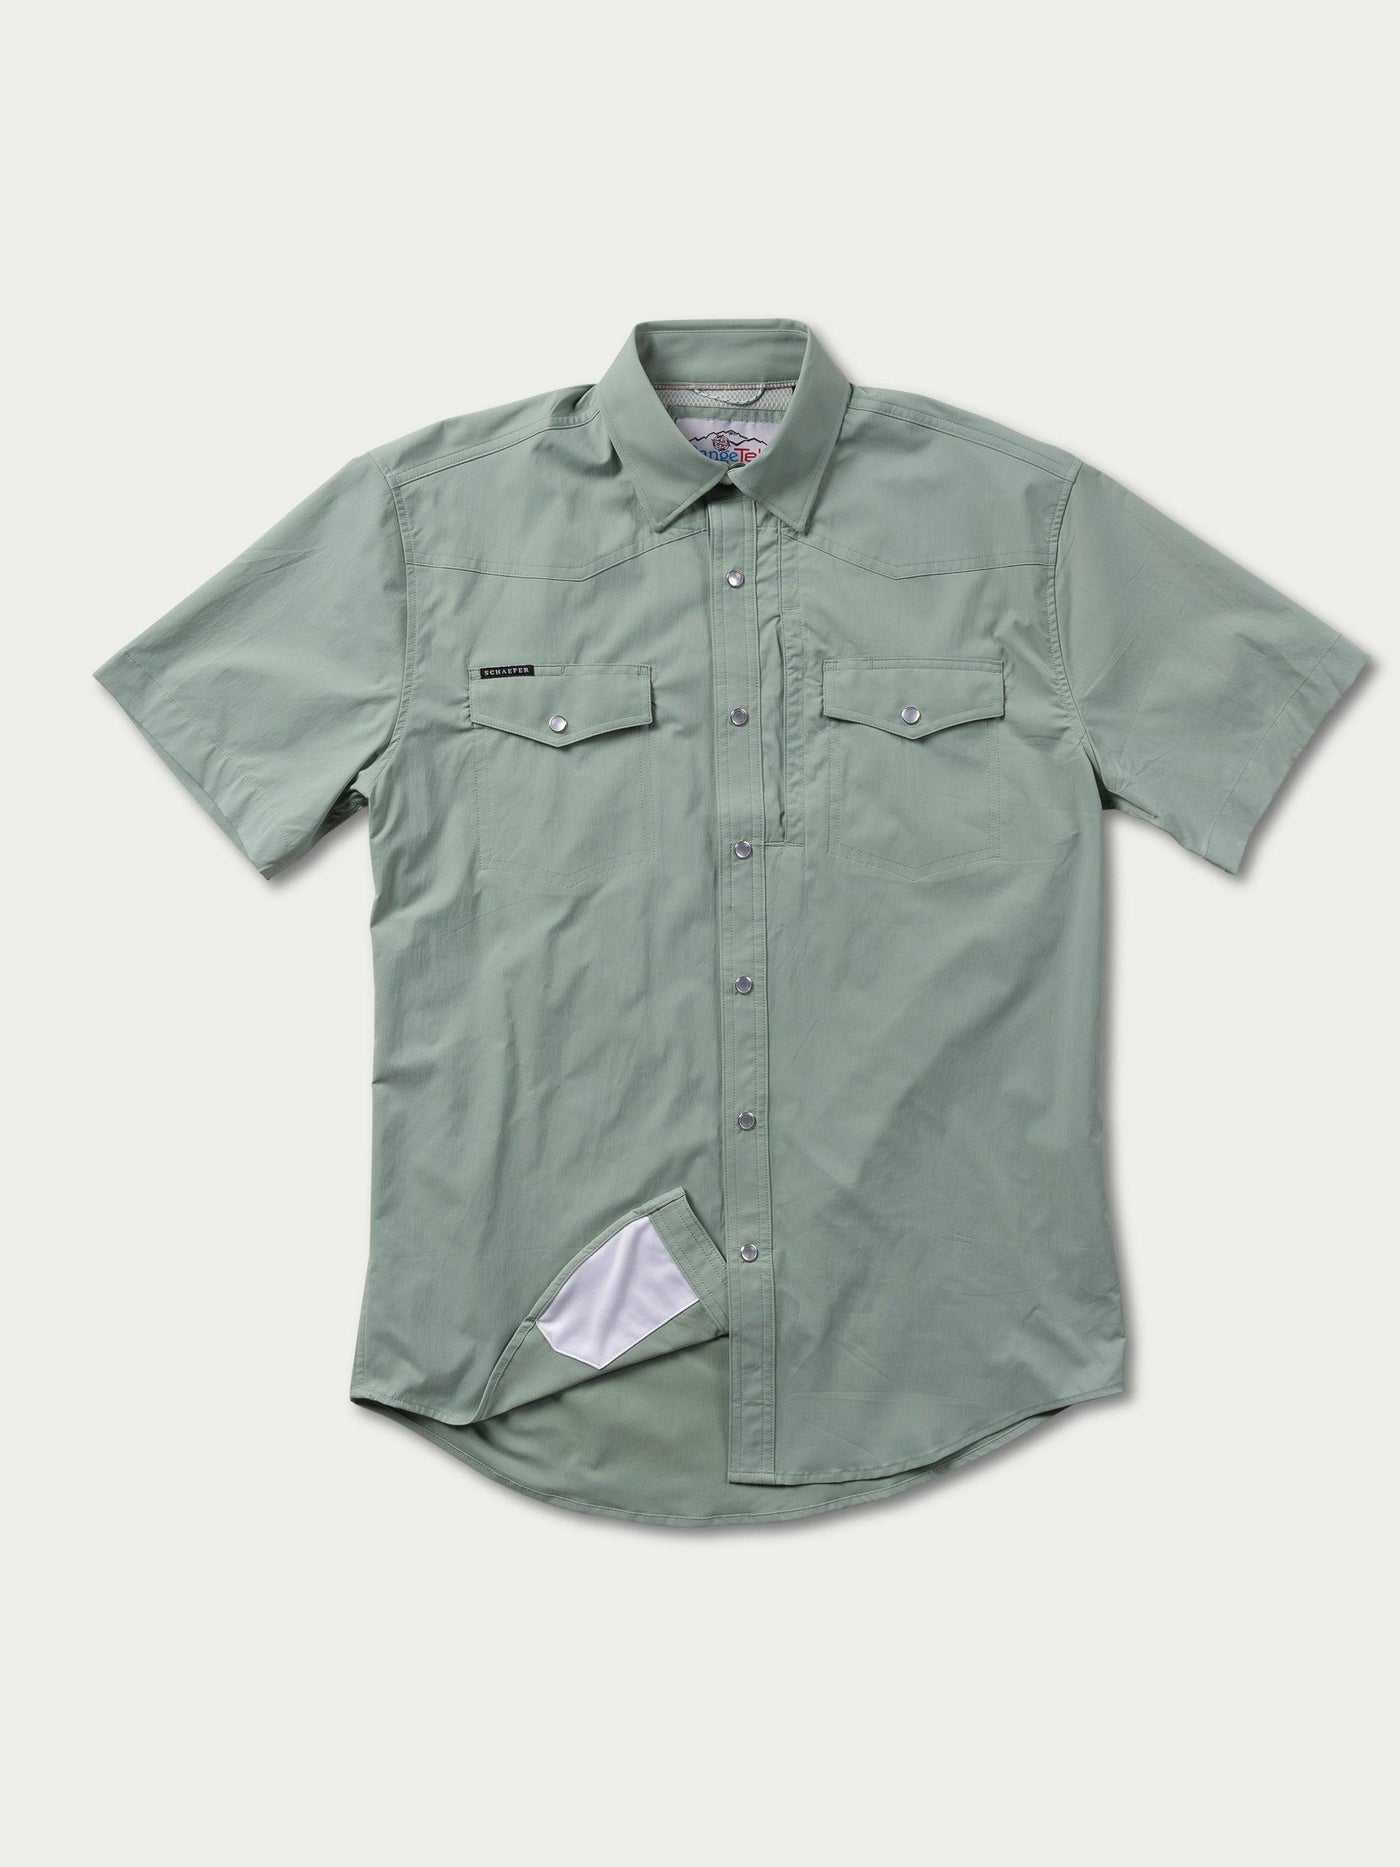 RangeTek Western Guide Shortsleeve Snap Shirt | Schaefer Outfitter